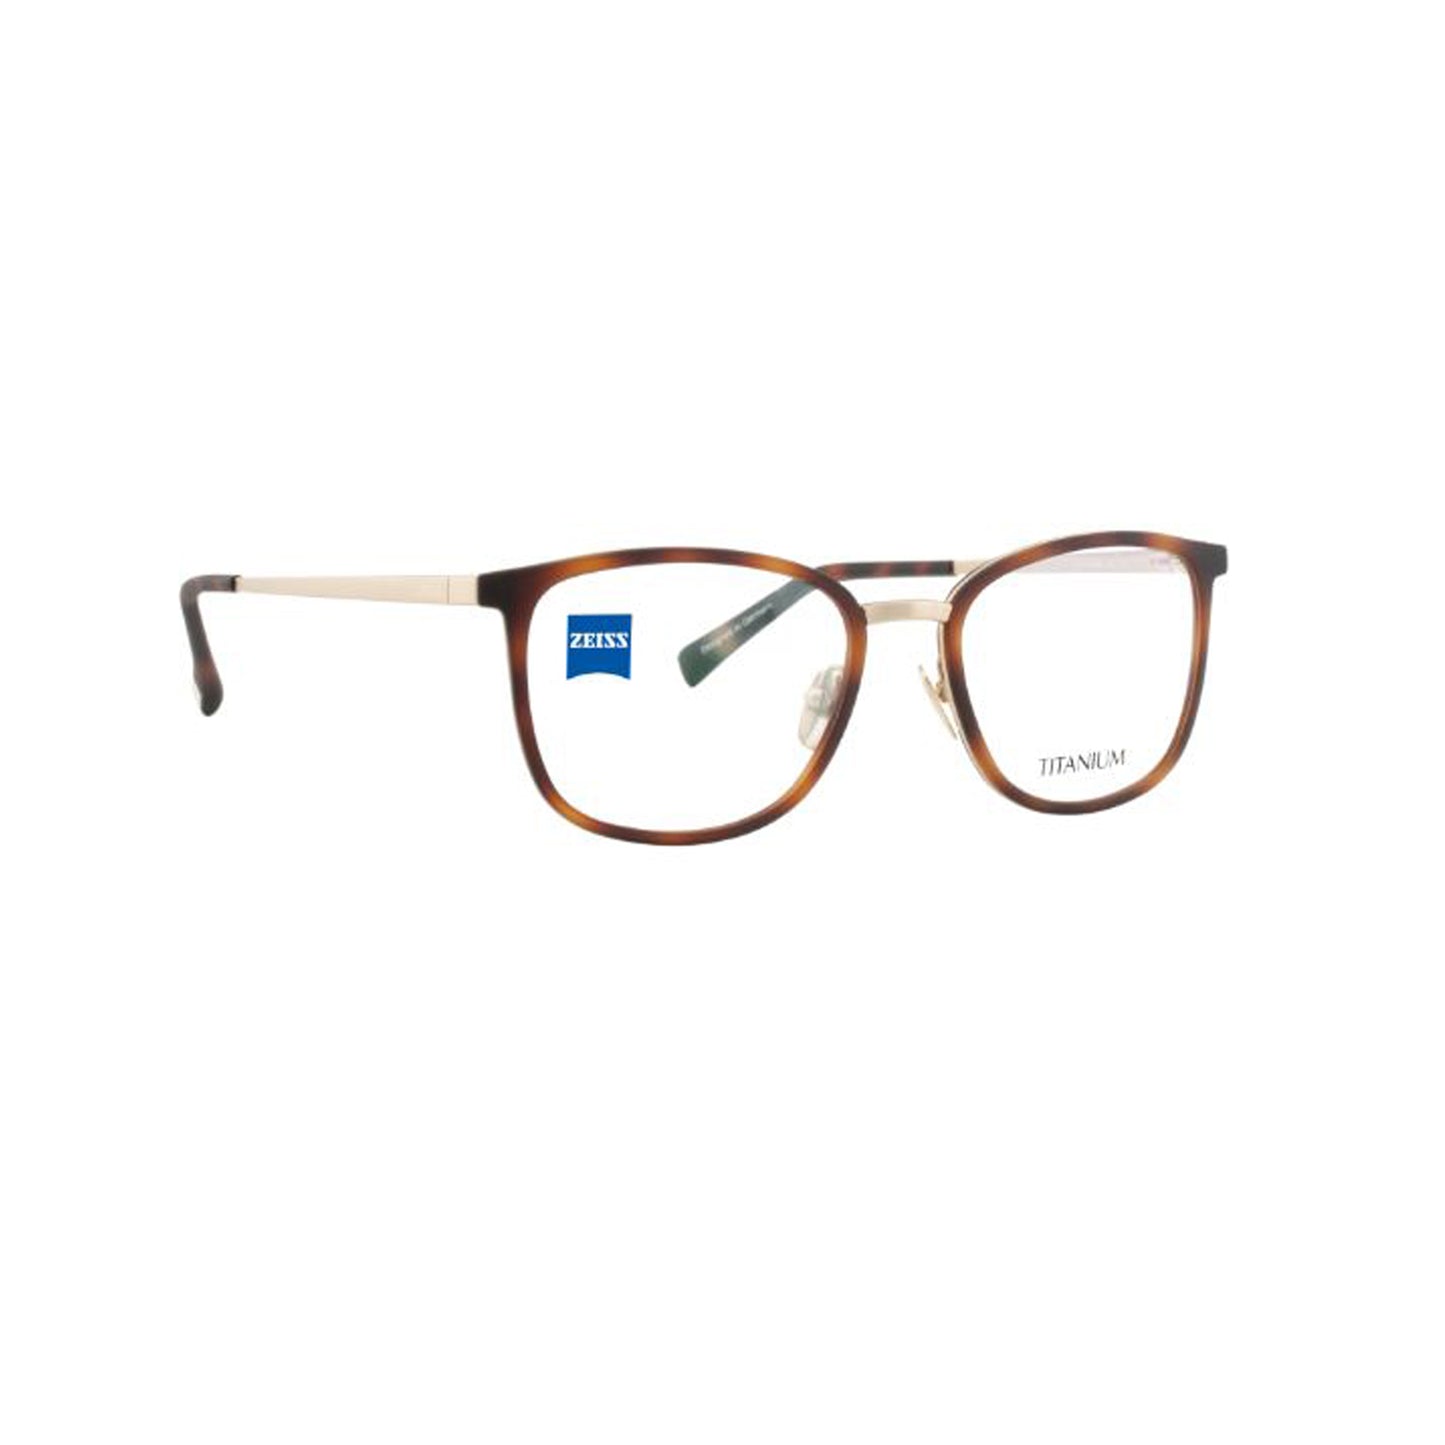 Zeiss Eyewear Brown Round Metal Full Rim Eyeglasses. Made in Germany ZS40029-Y22